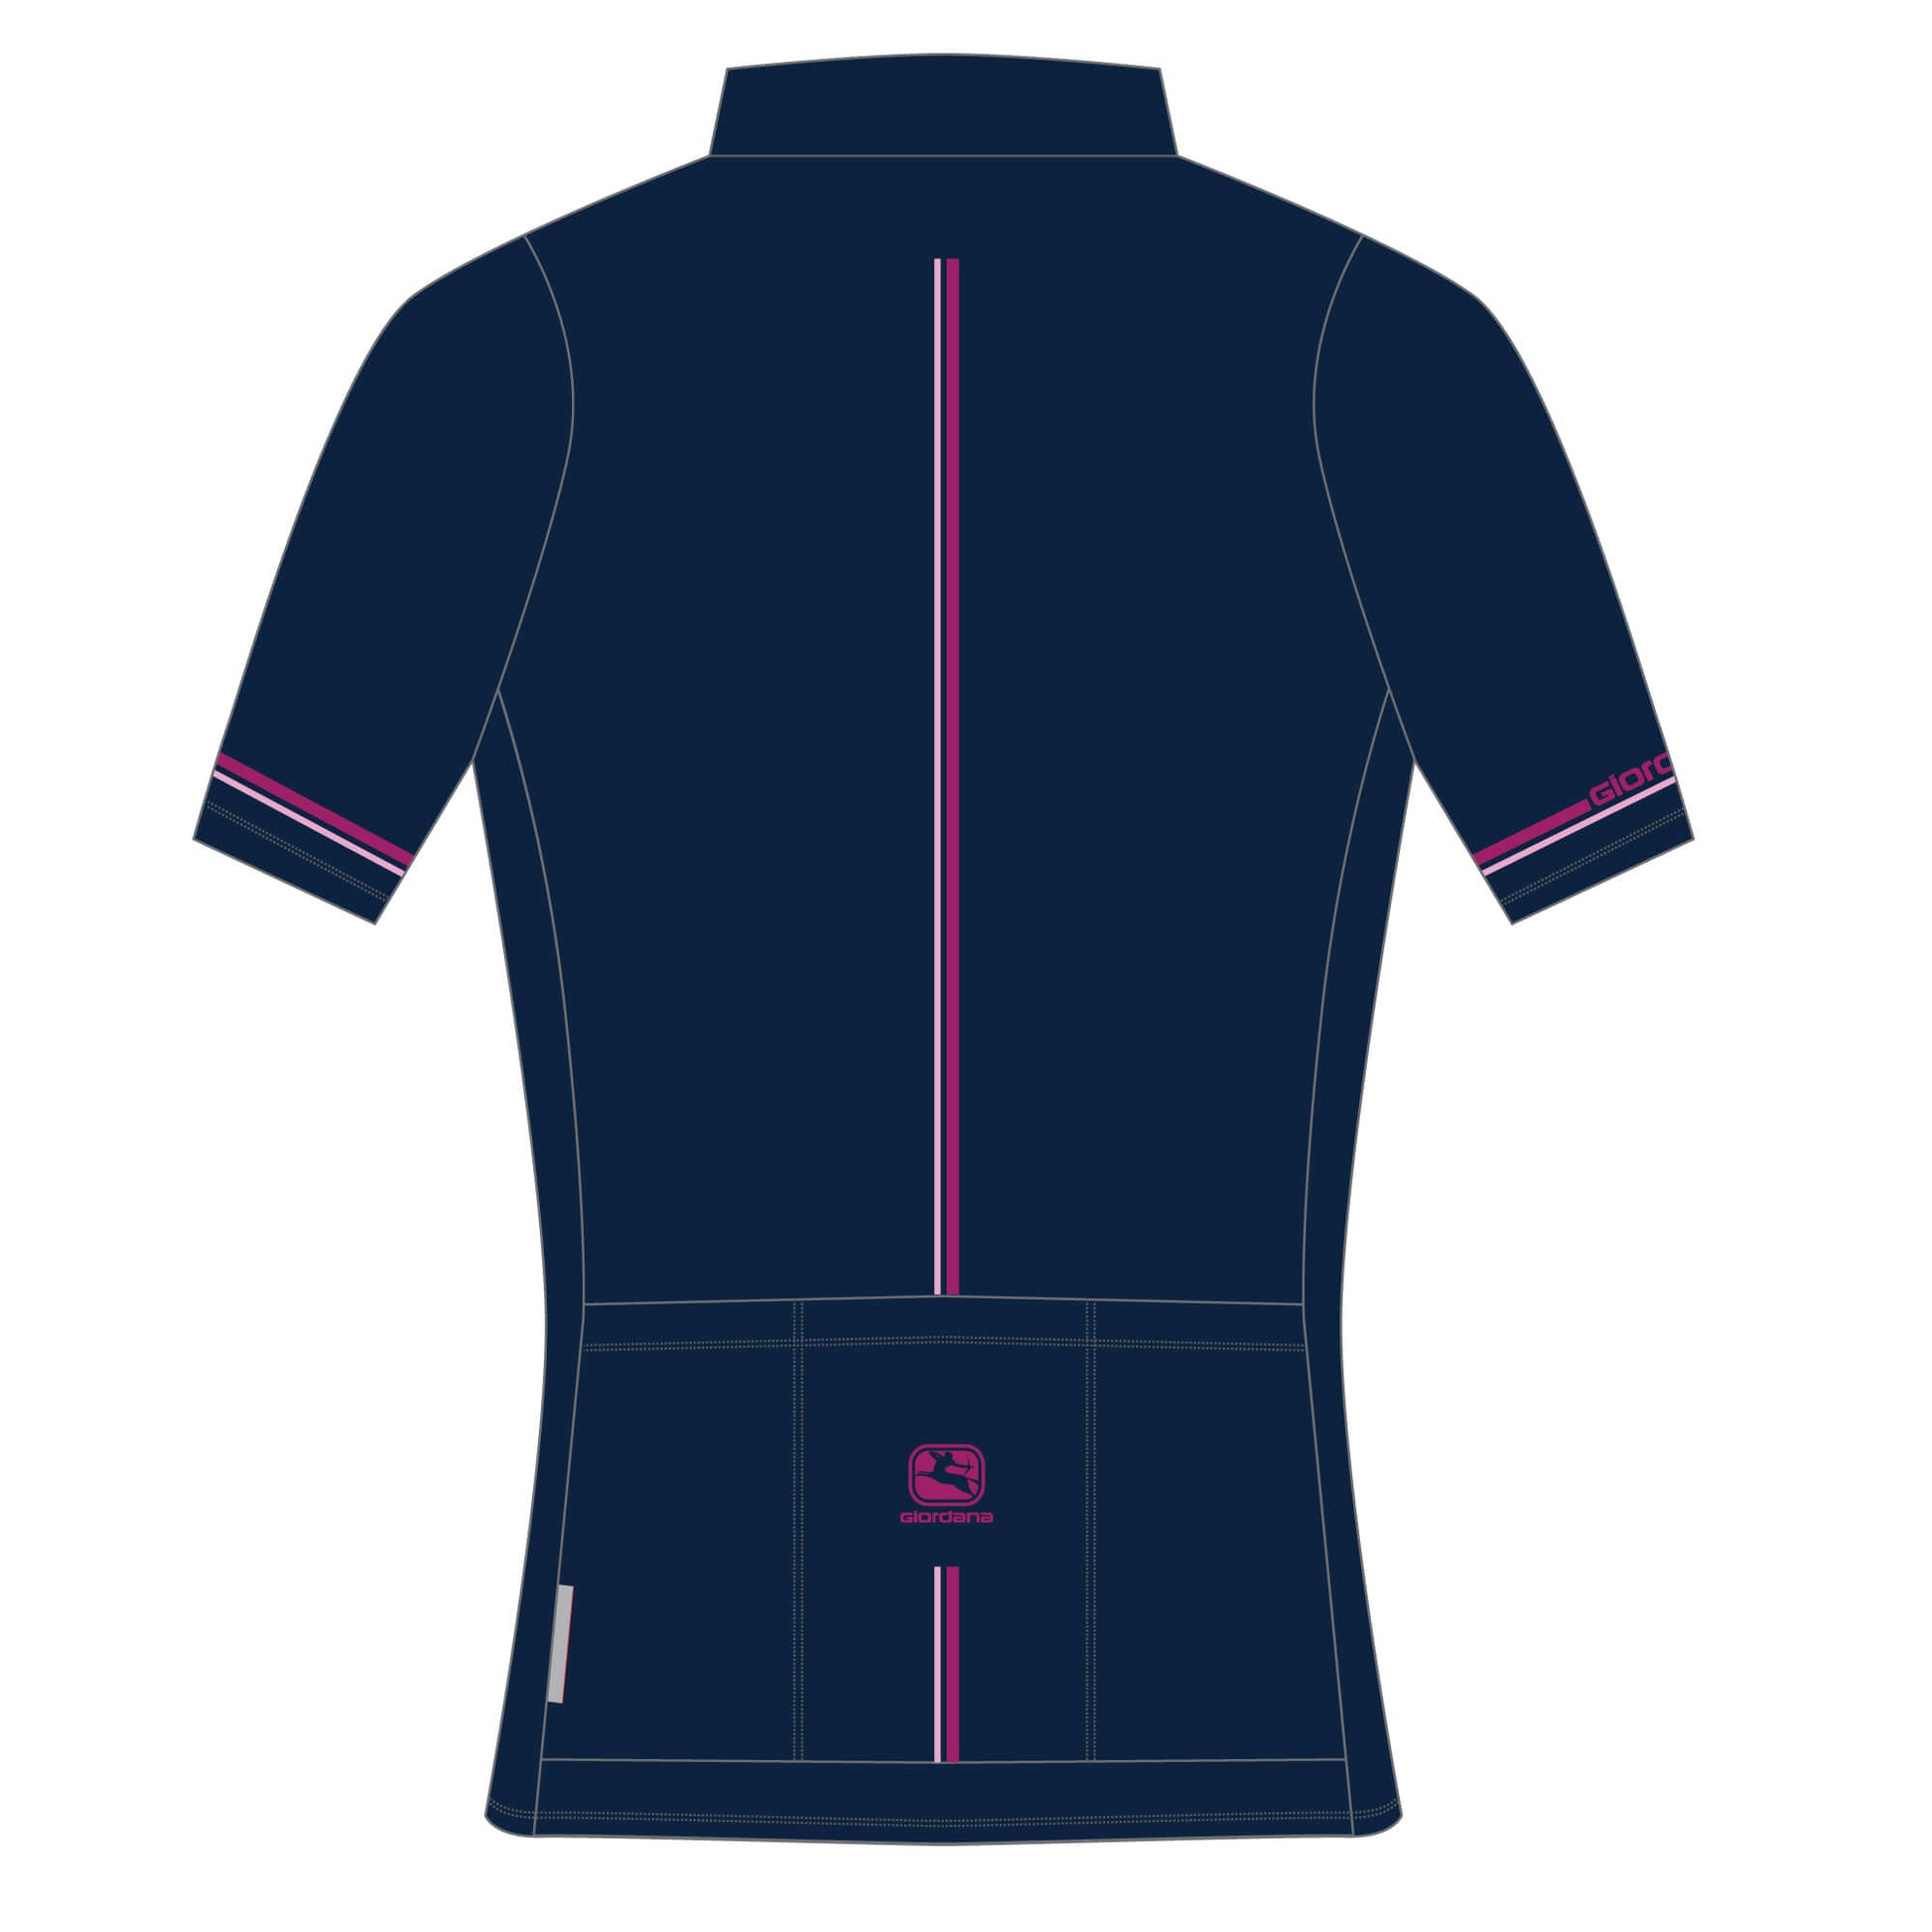 Women's Vero Pro Short Sleeve Jersey - Giro Sleeve JERSEYS JERSEYS + TANKS   